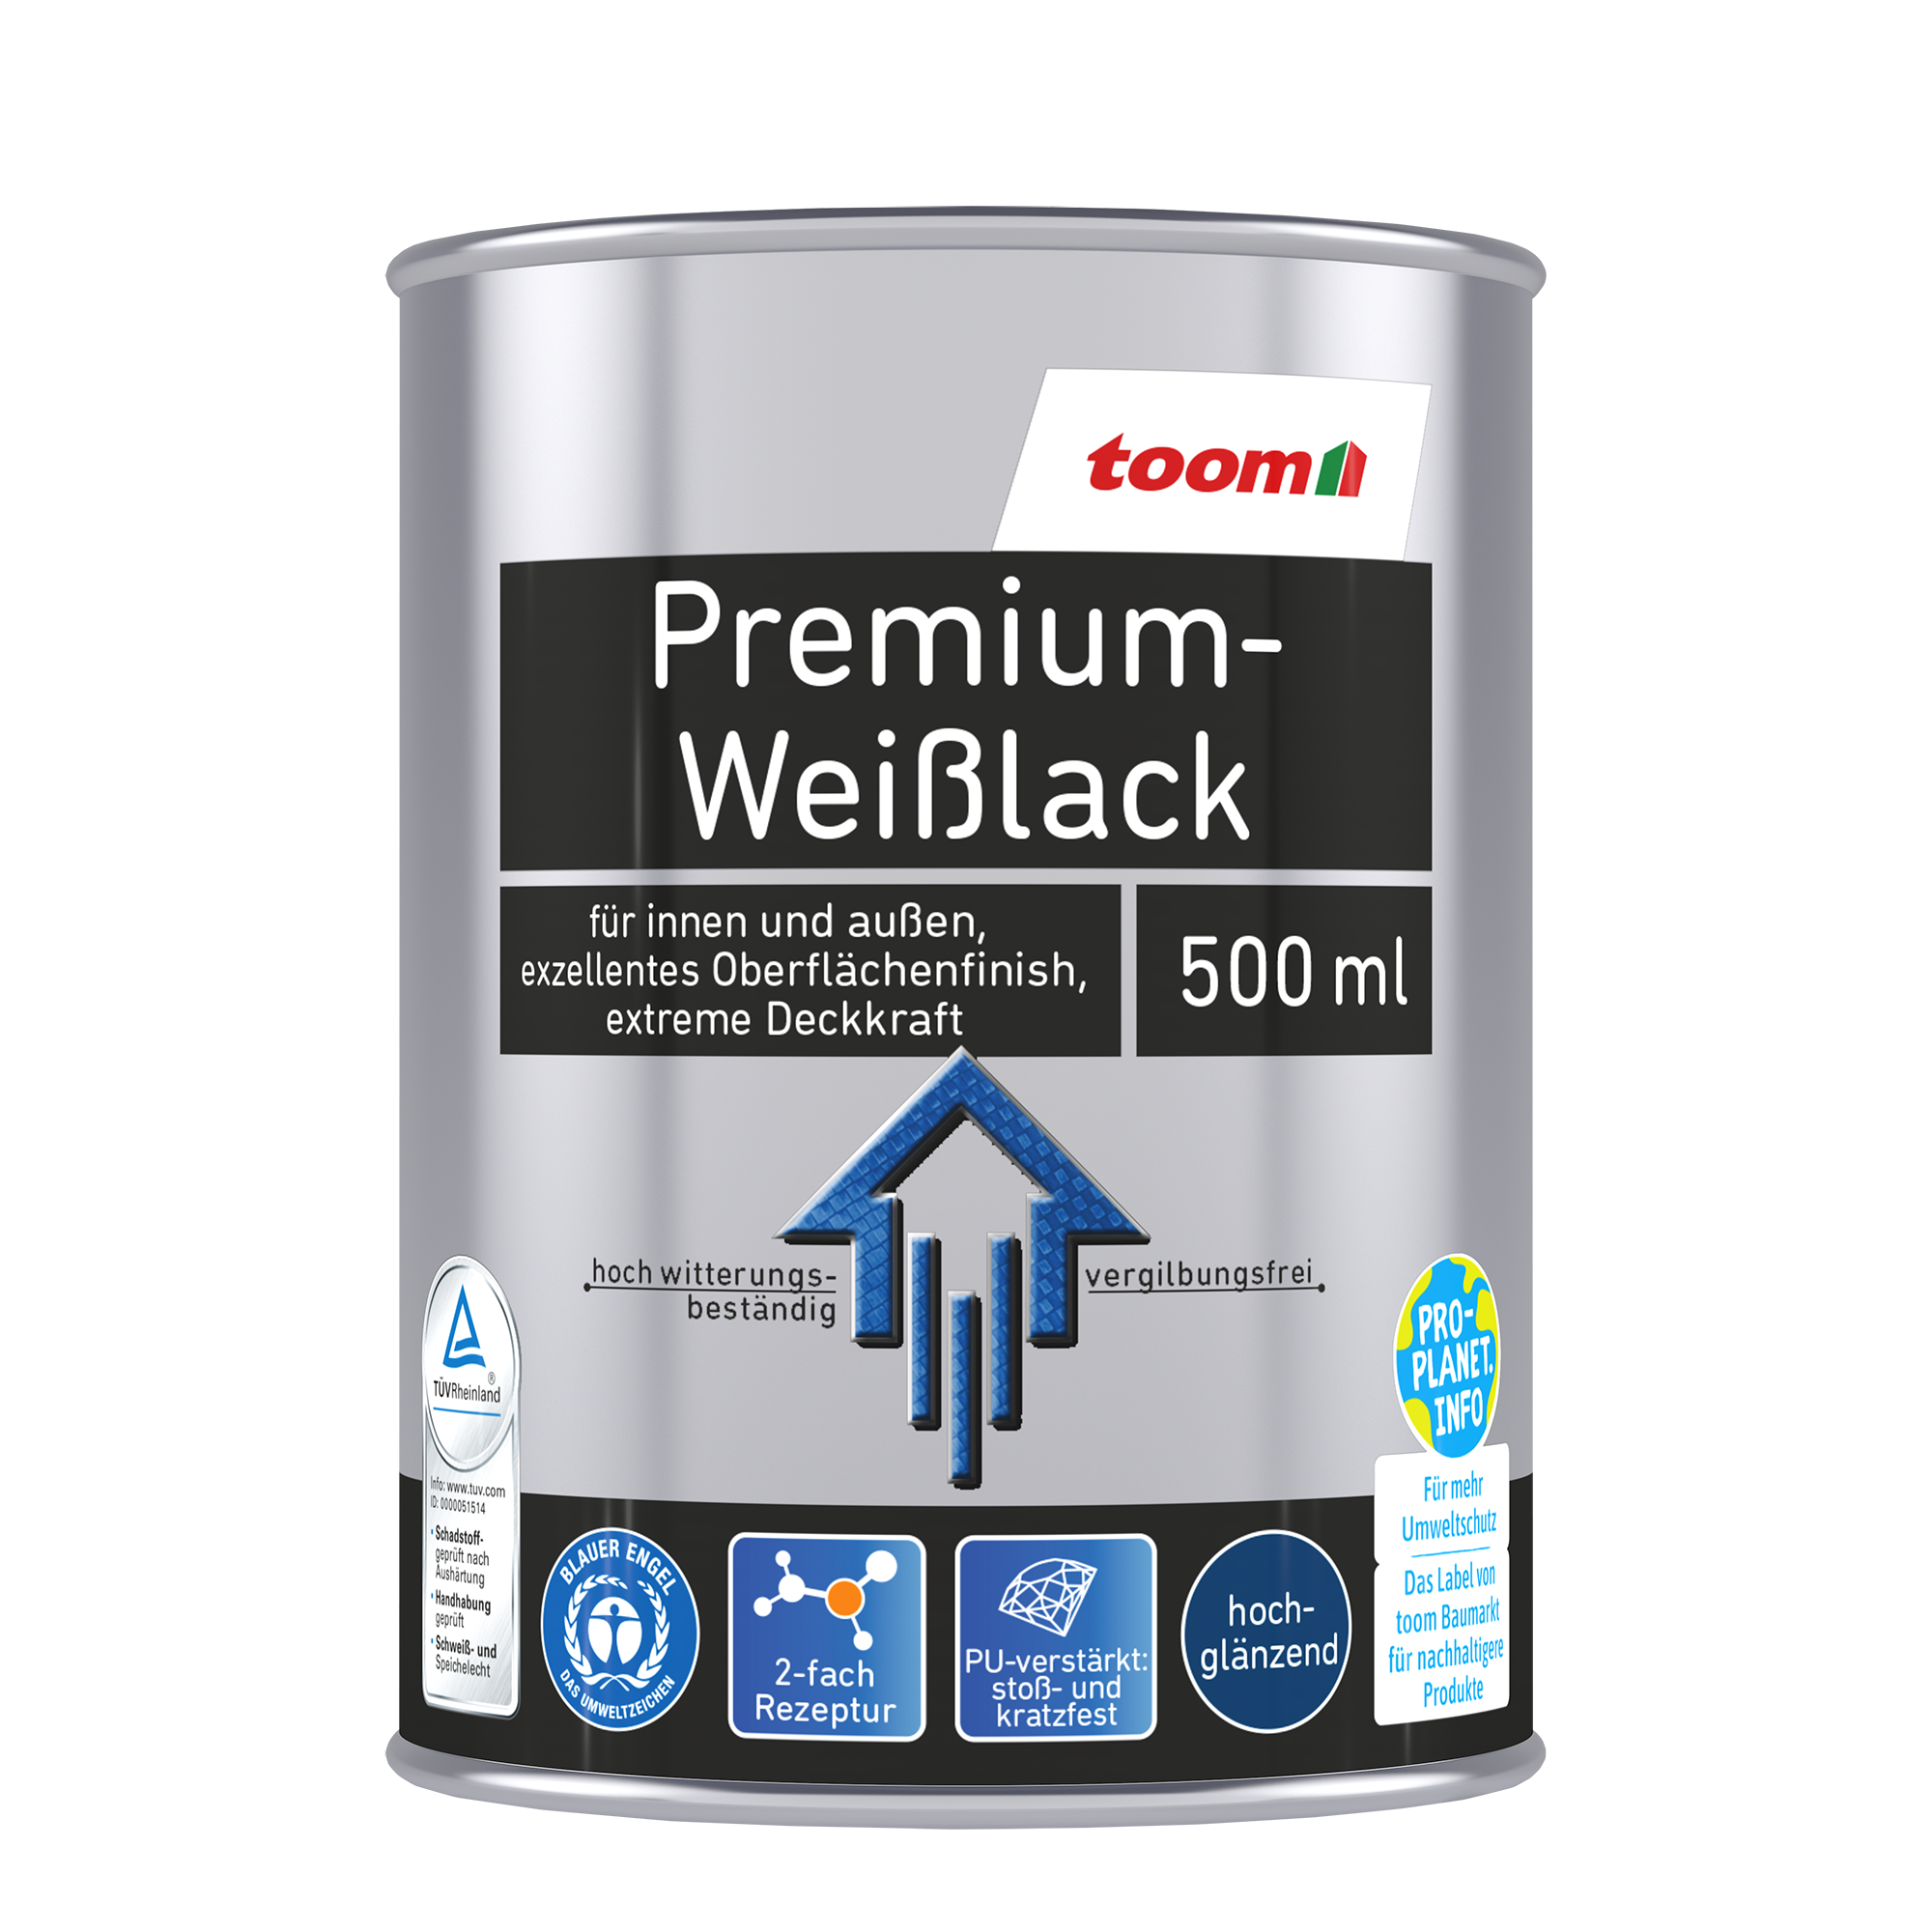 Premium-Weißlack glänzend 500 ml + product picture